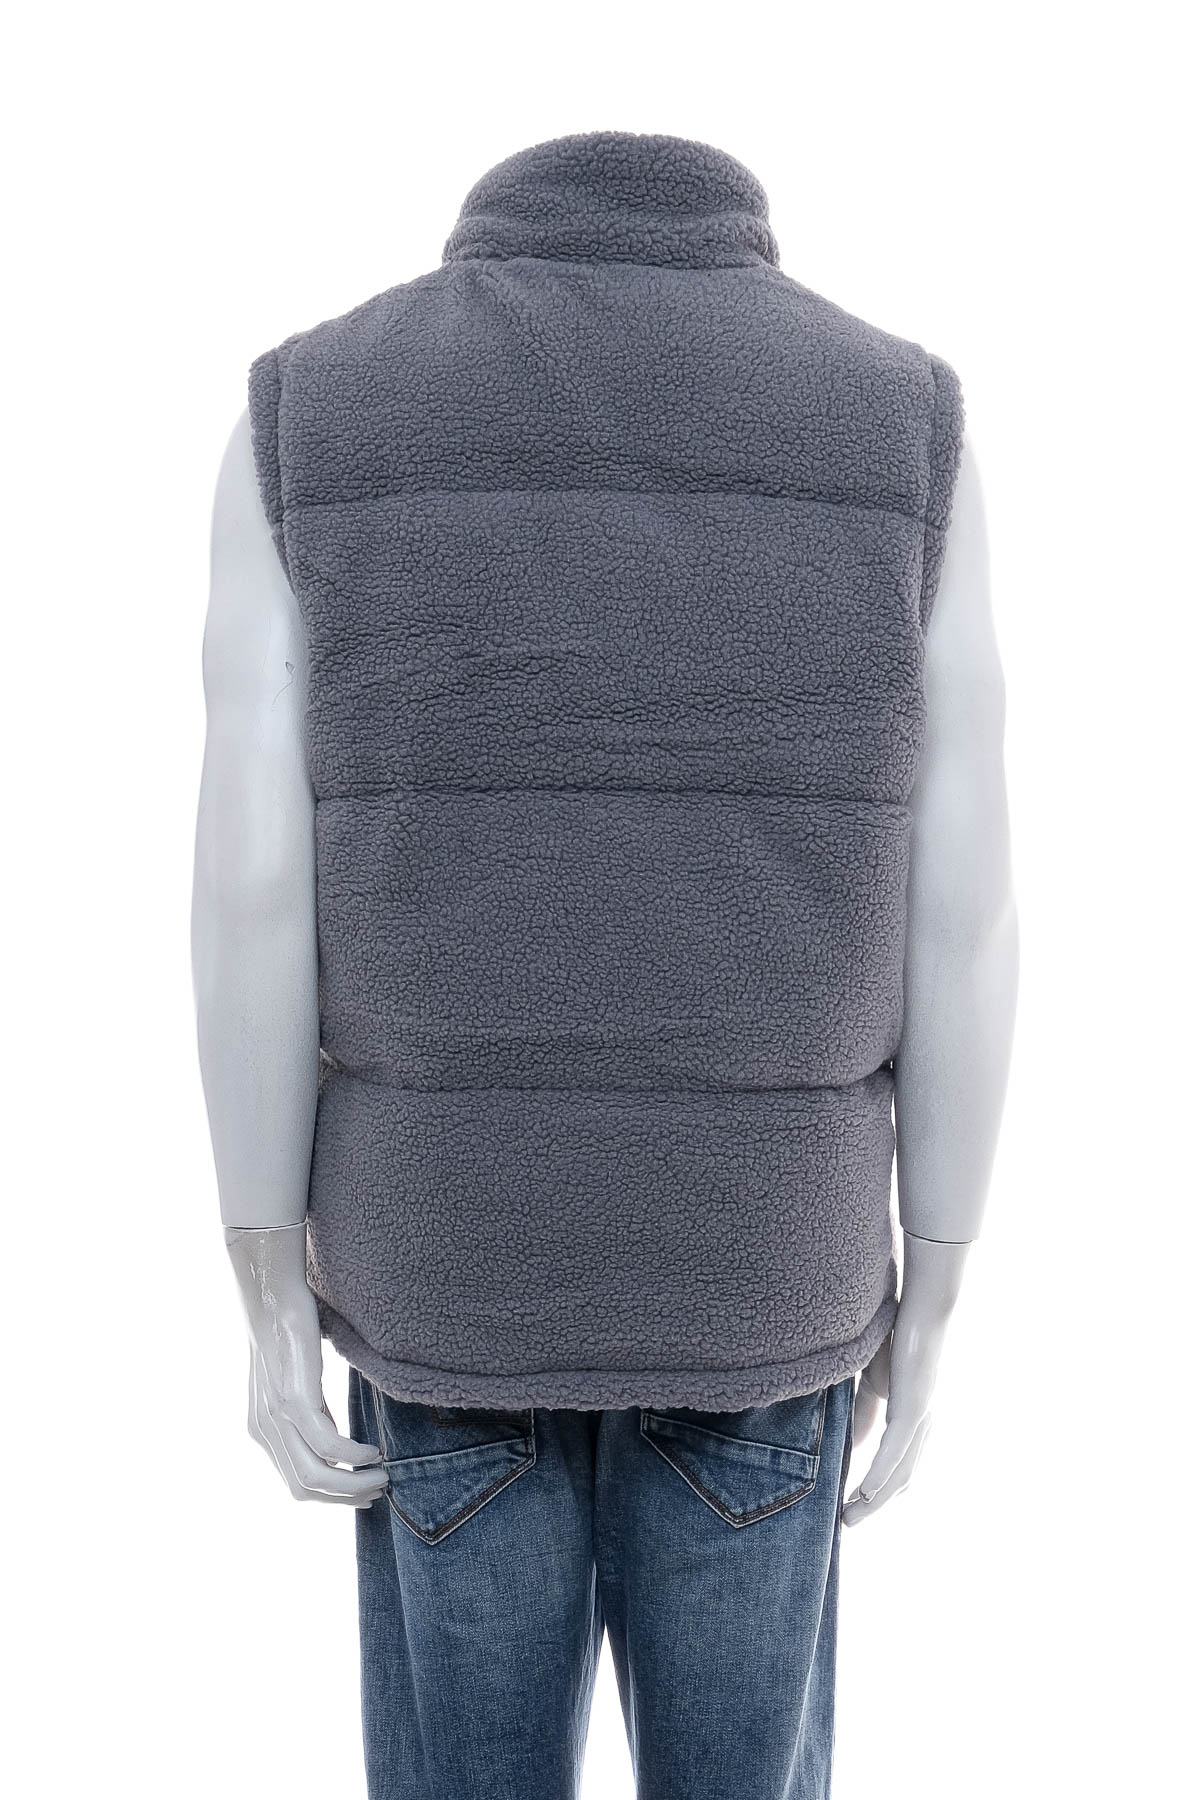 Men's vest - COMMON KOLLECTIV - 1